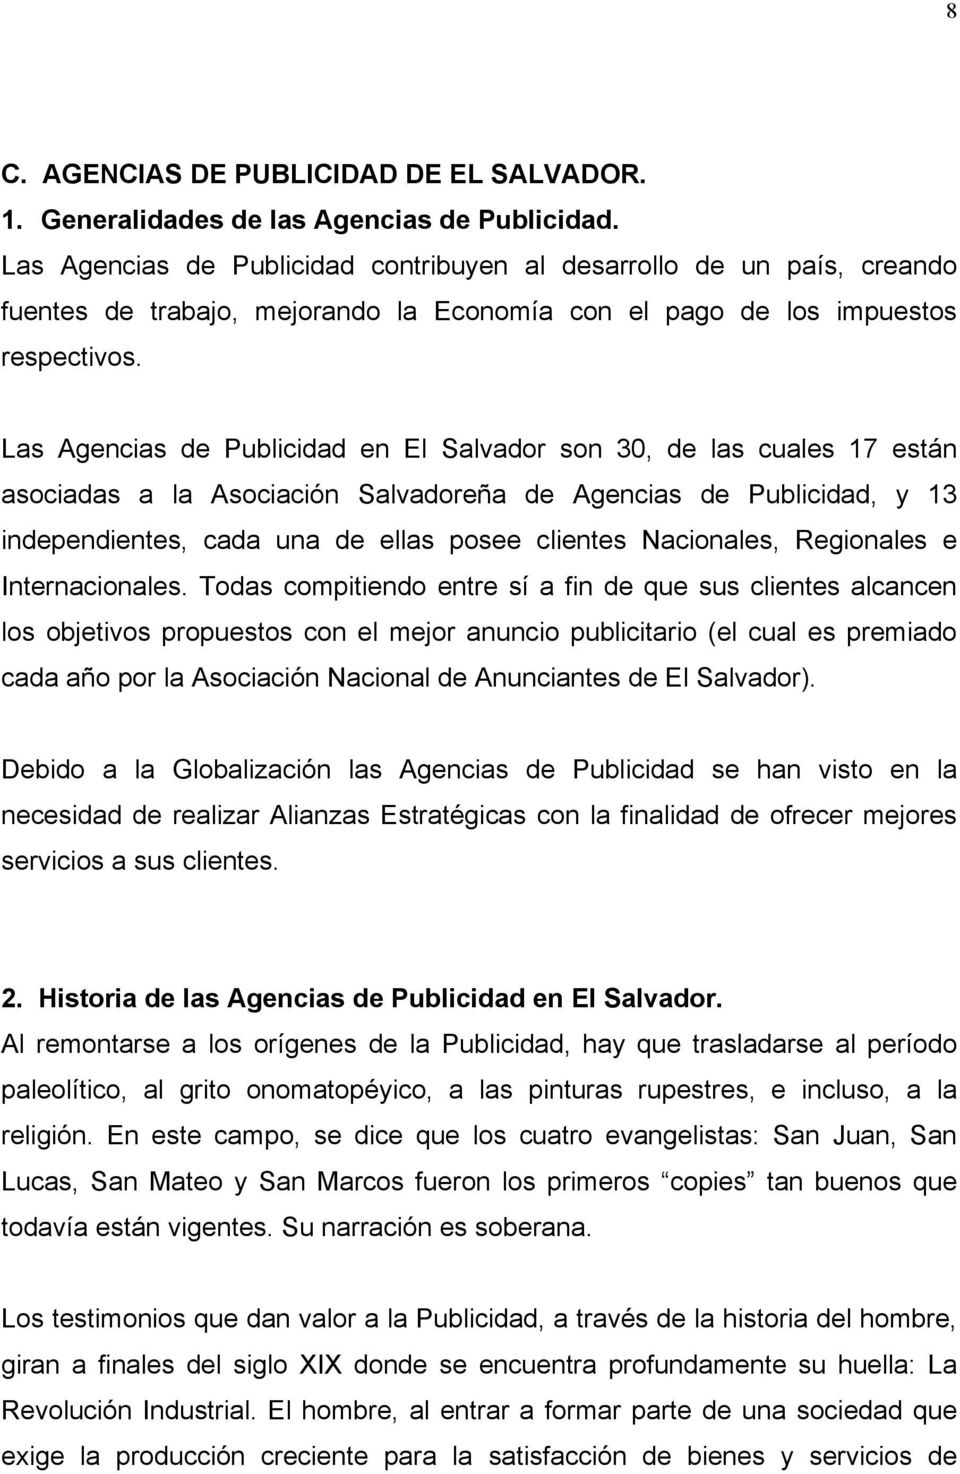 Las Agencias de Publicidad en El Salvador son 30, de las cuales 17 están asociadas a la Asociación Salvadoreña de Agencias de Publicidad, y 13 independientes, cada una de ellas posee clientes